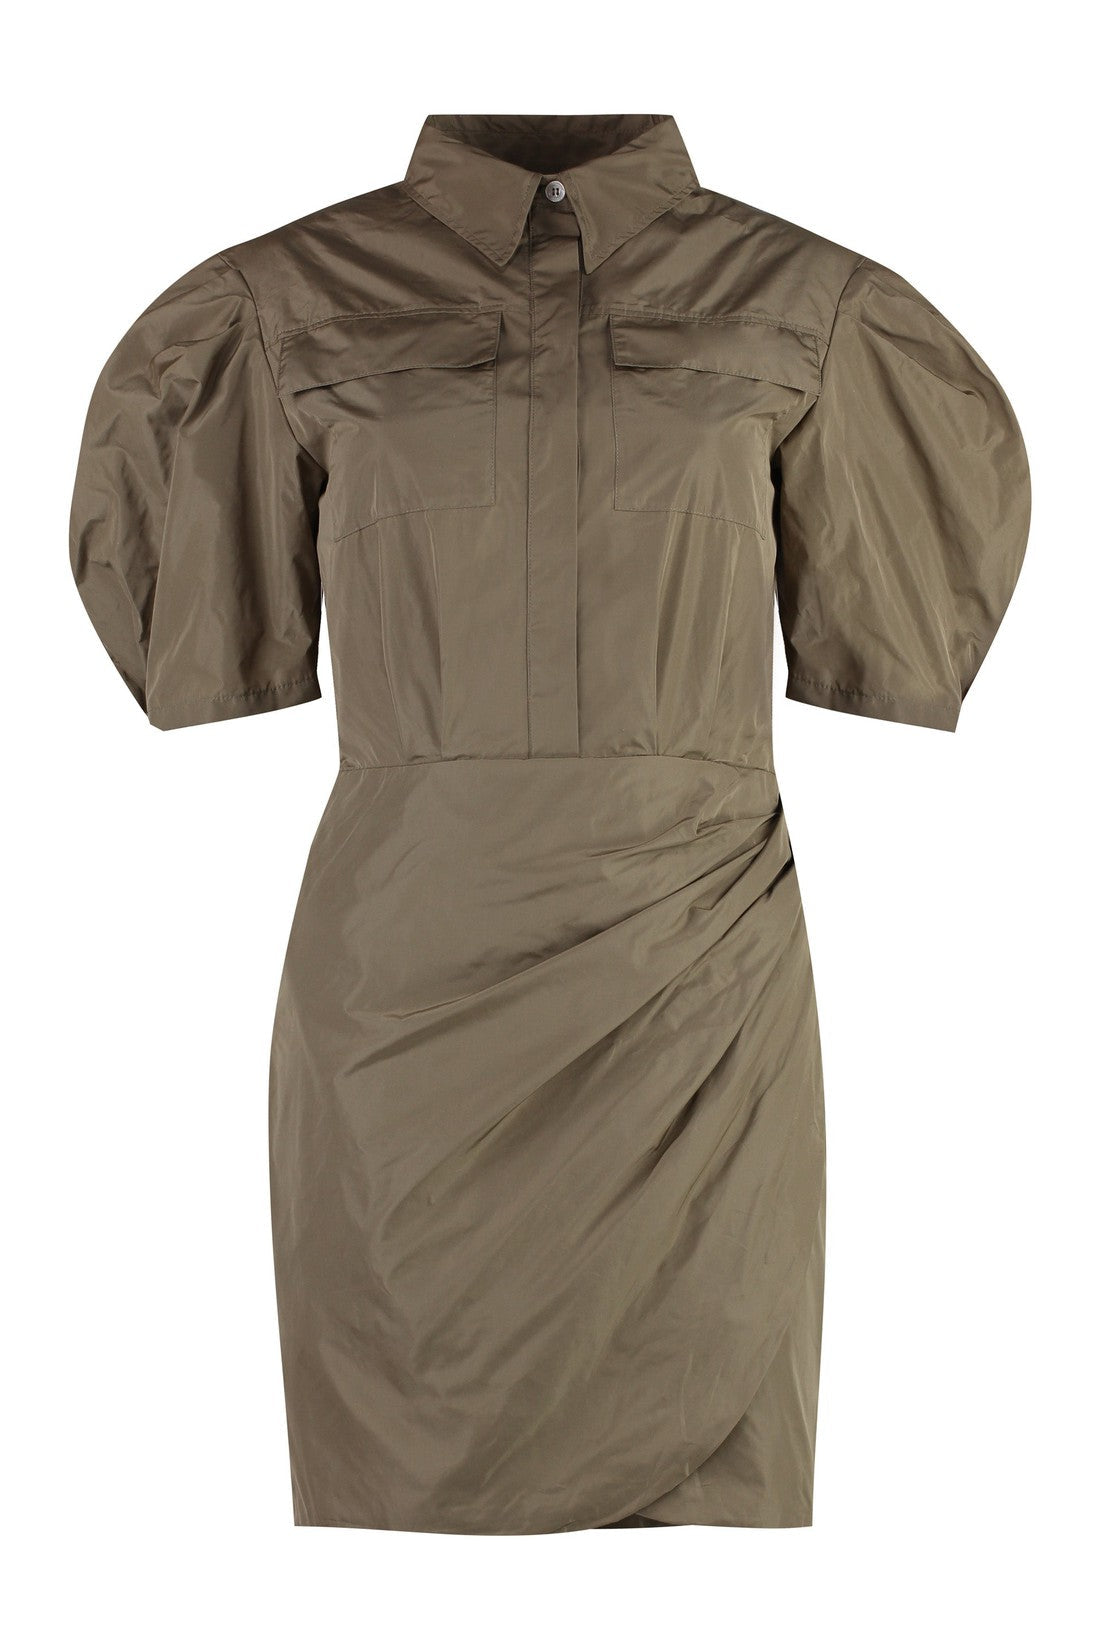 MSGM-OUTLET-SALE-Technical nylon dress-ARCHIVIST